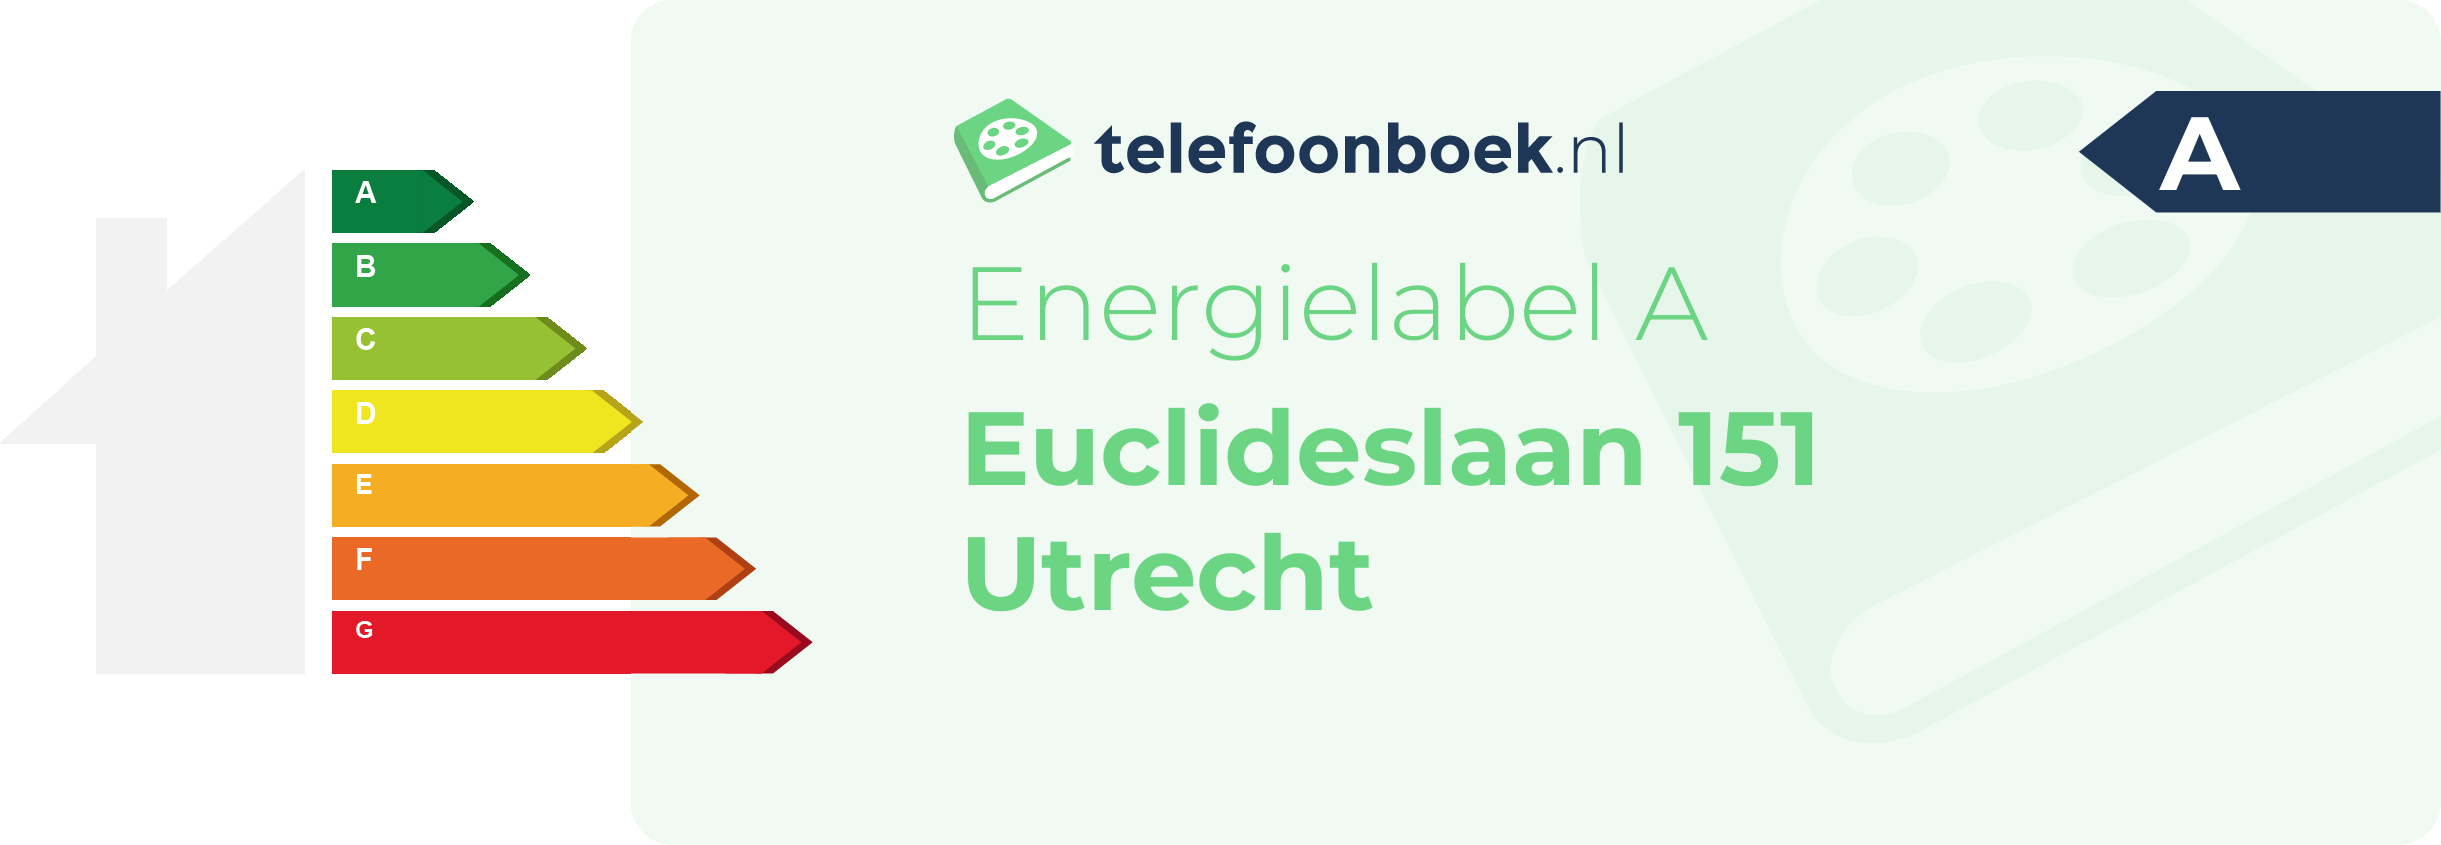 Energielabel Euclideslaan 151 Utrecht